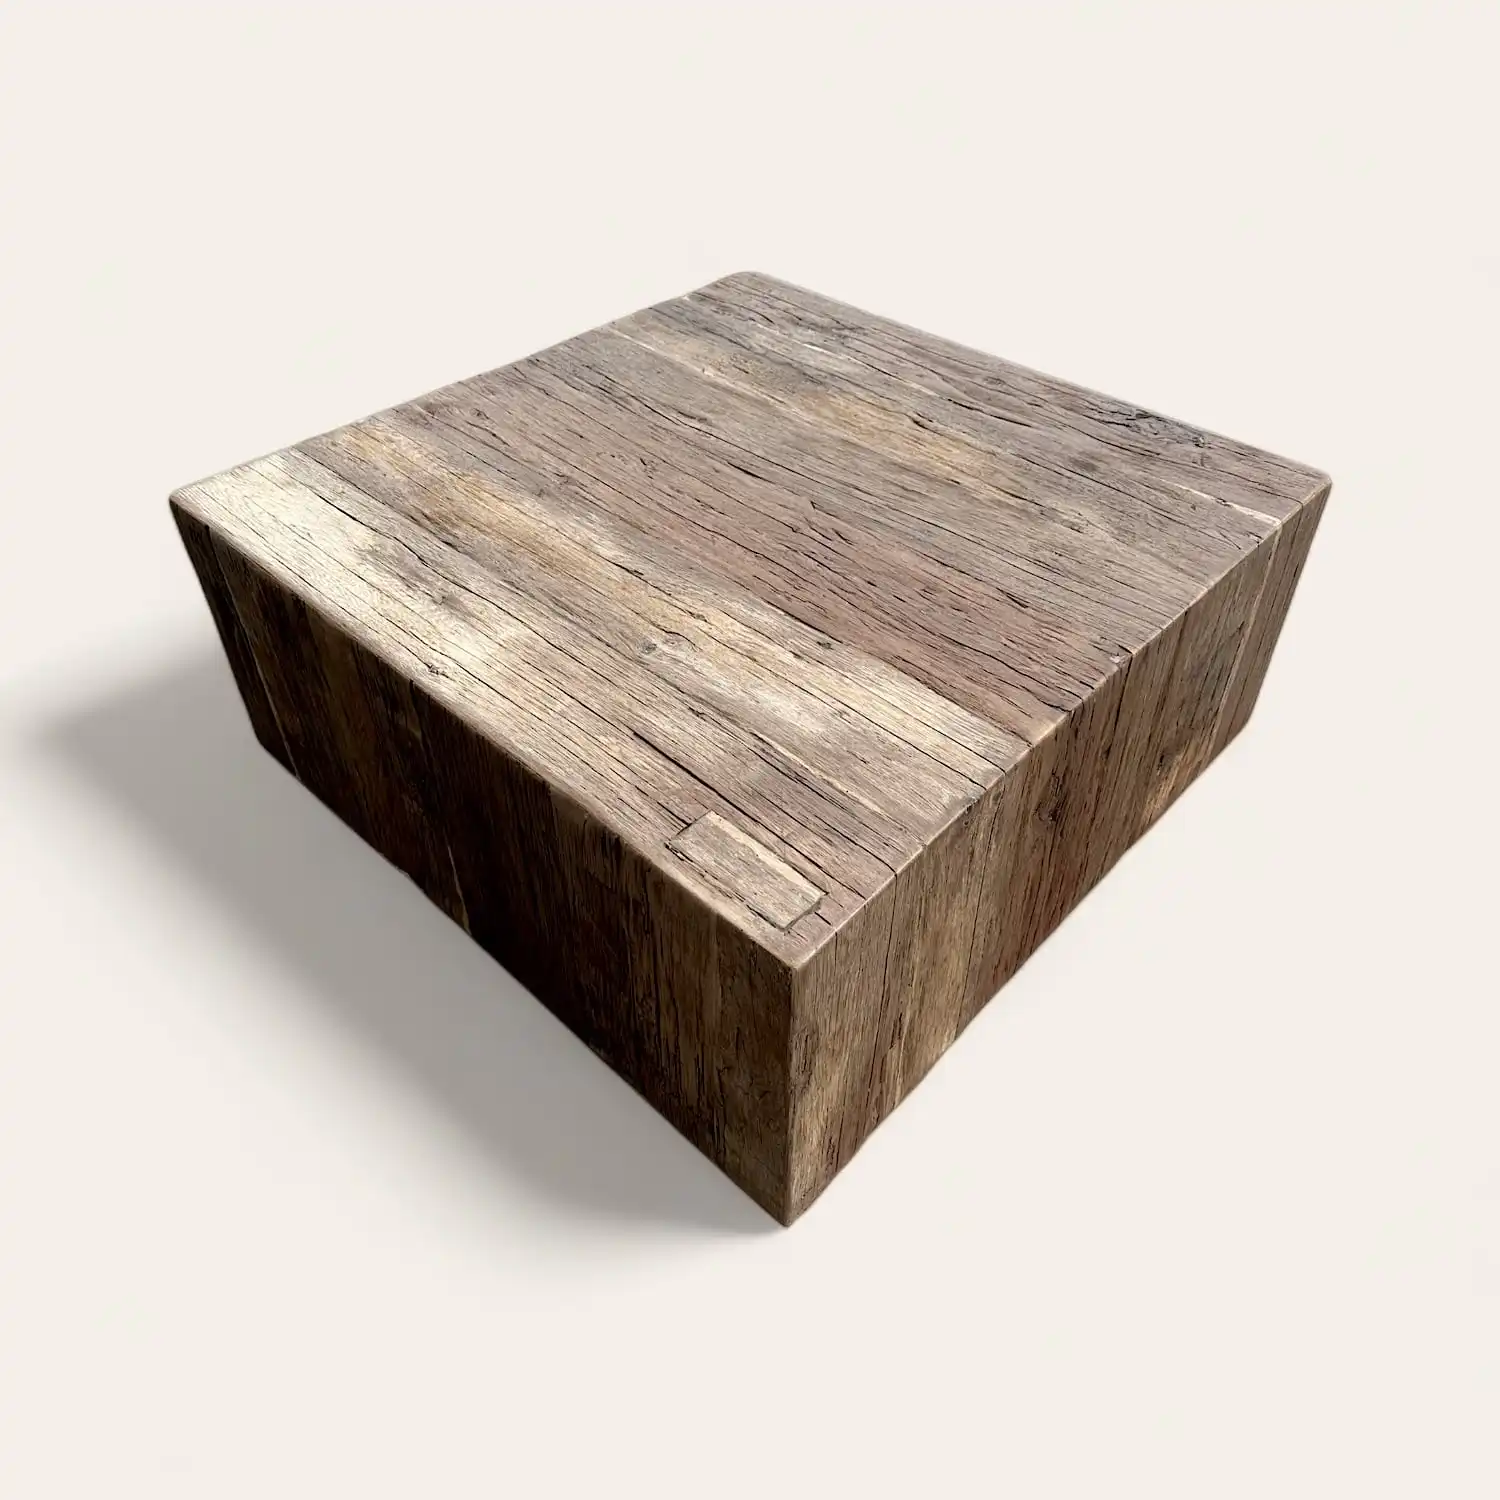  Une table basse block en bois rustique sur un fond blanc. 